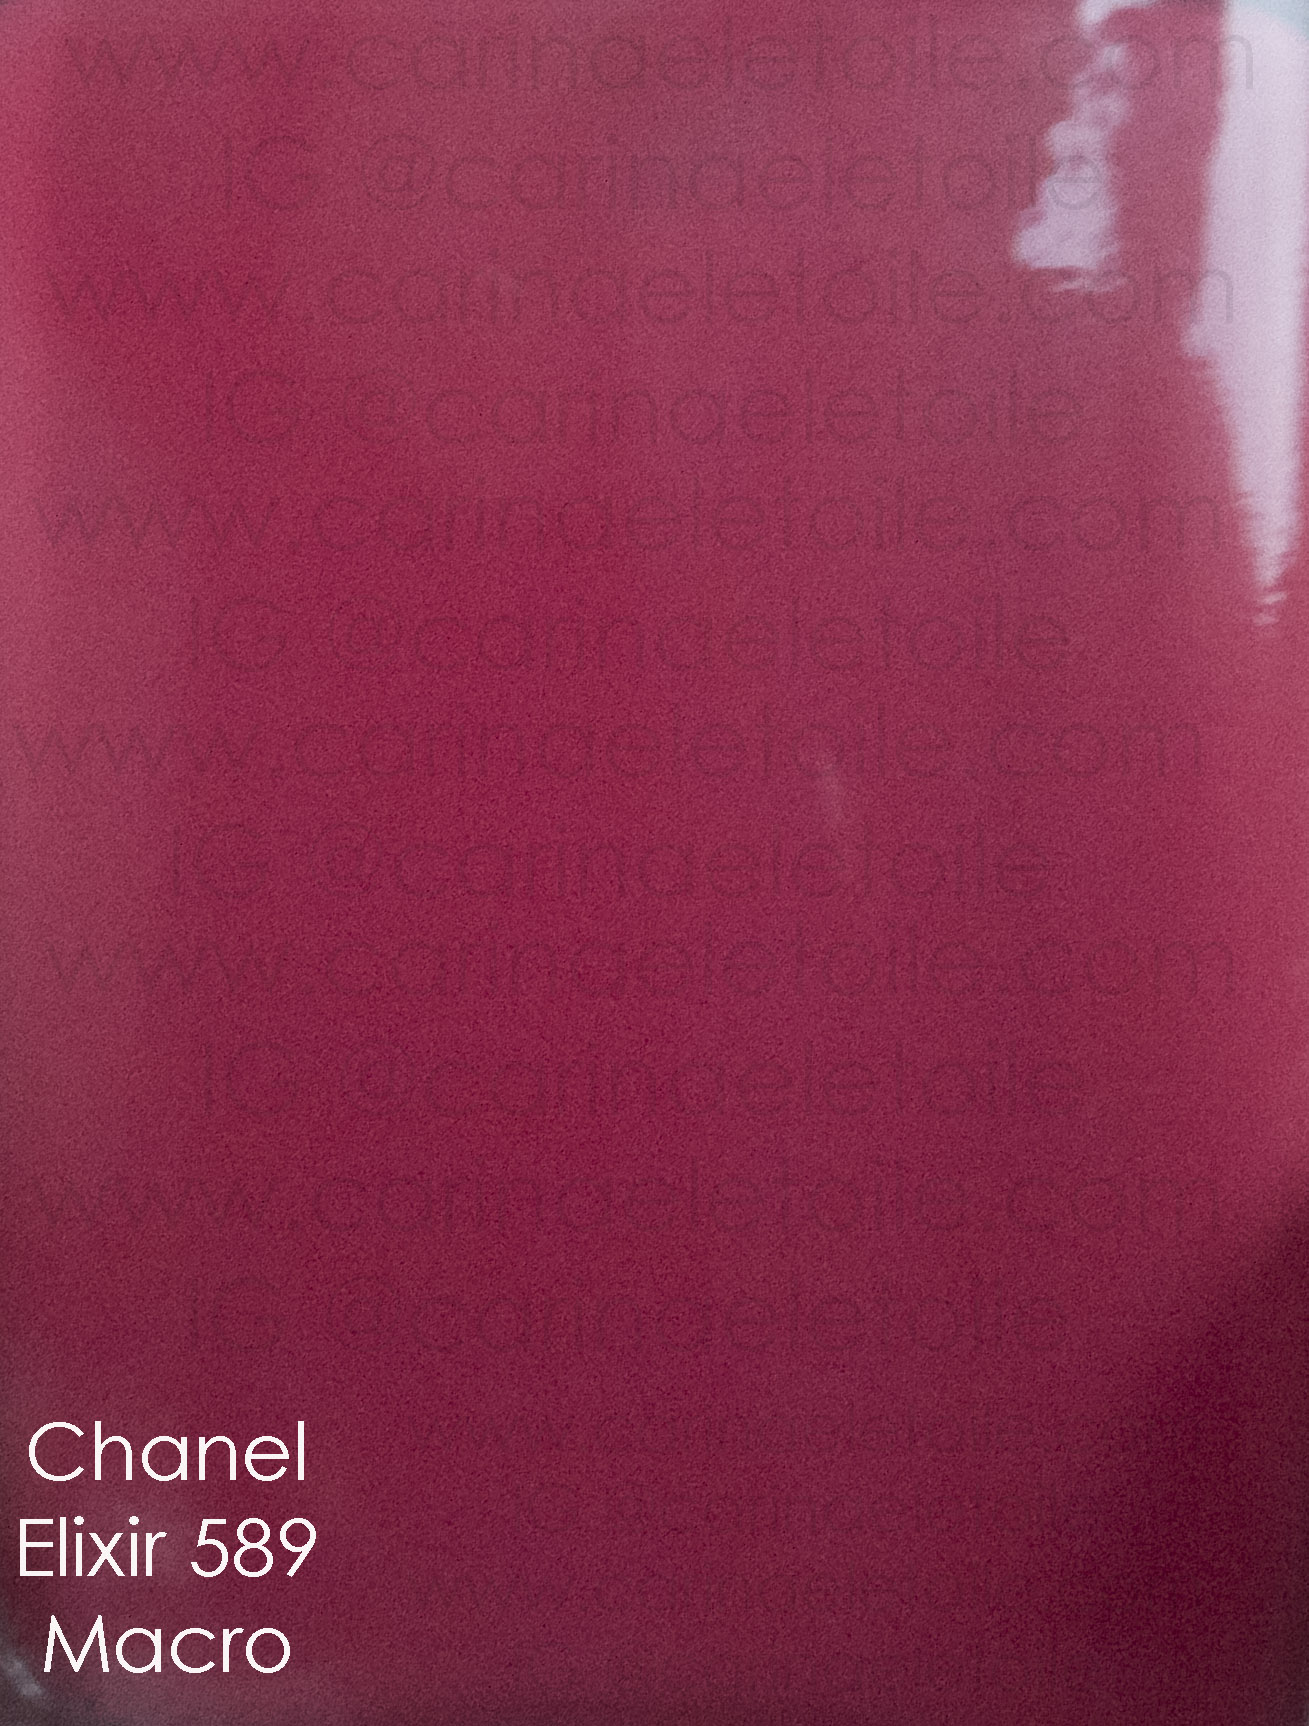 Chanel Elixir